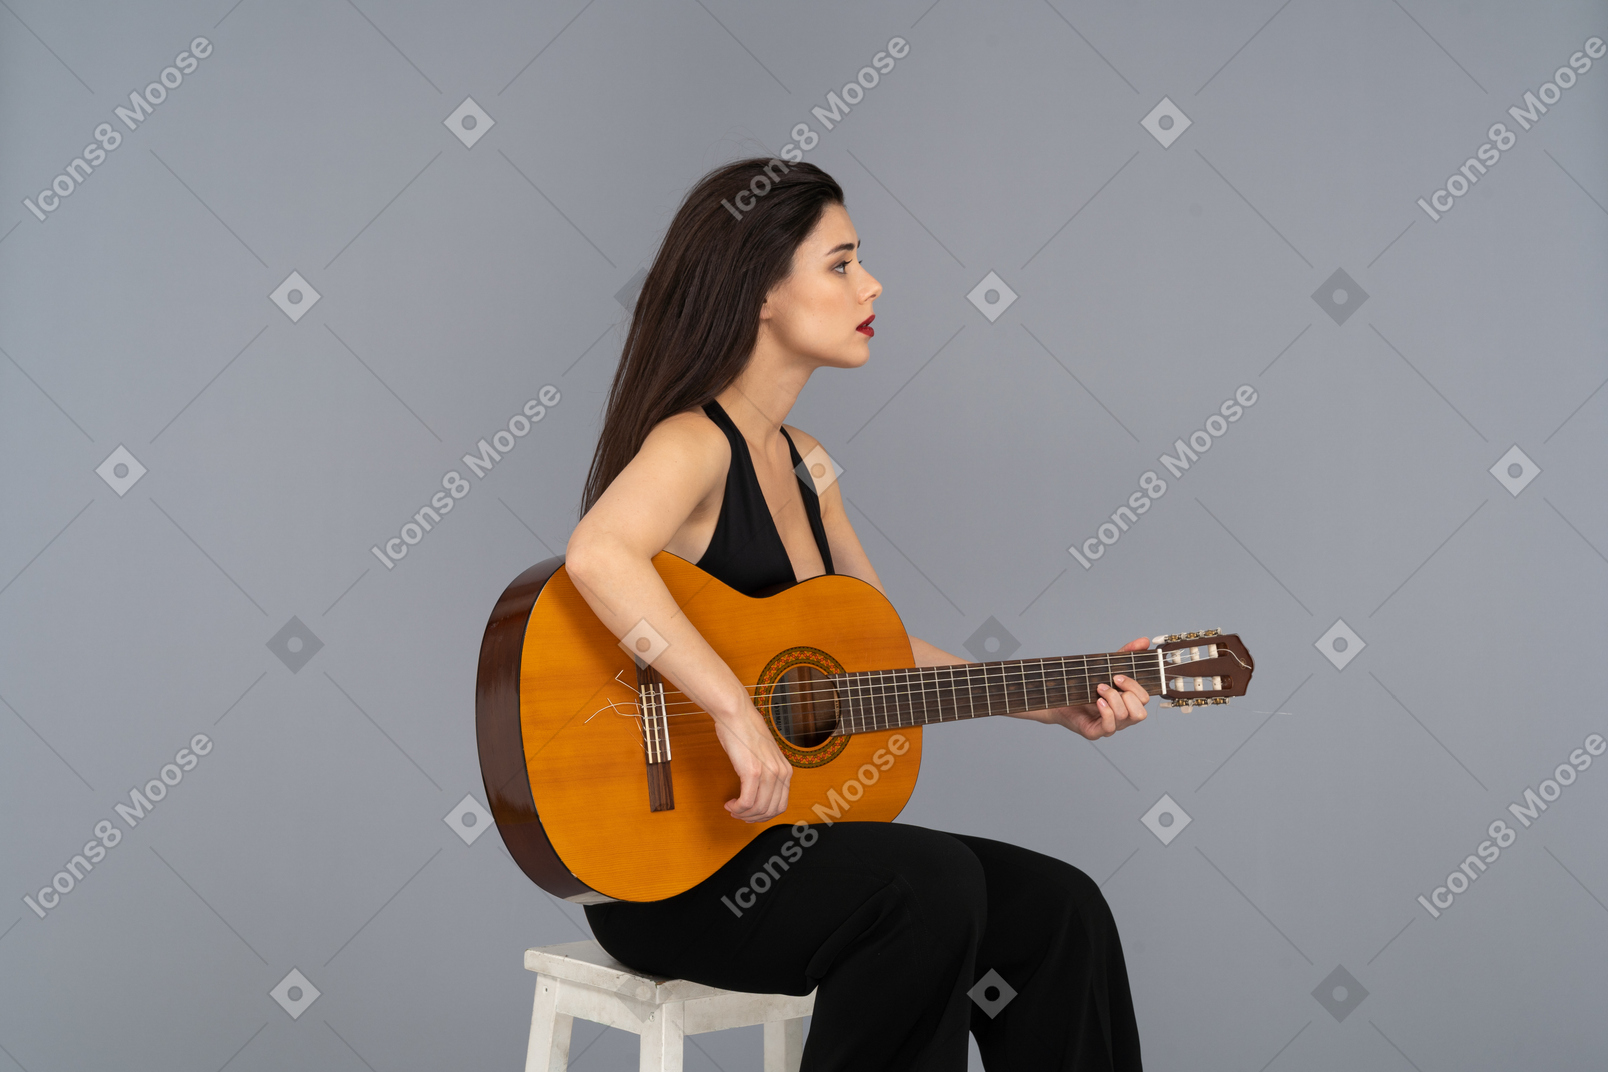 Dreiviertelansicht einer sitzenden jungen dame im schwarzen anzug, die gitarre spielt